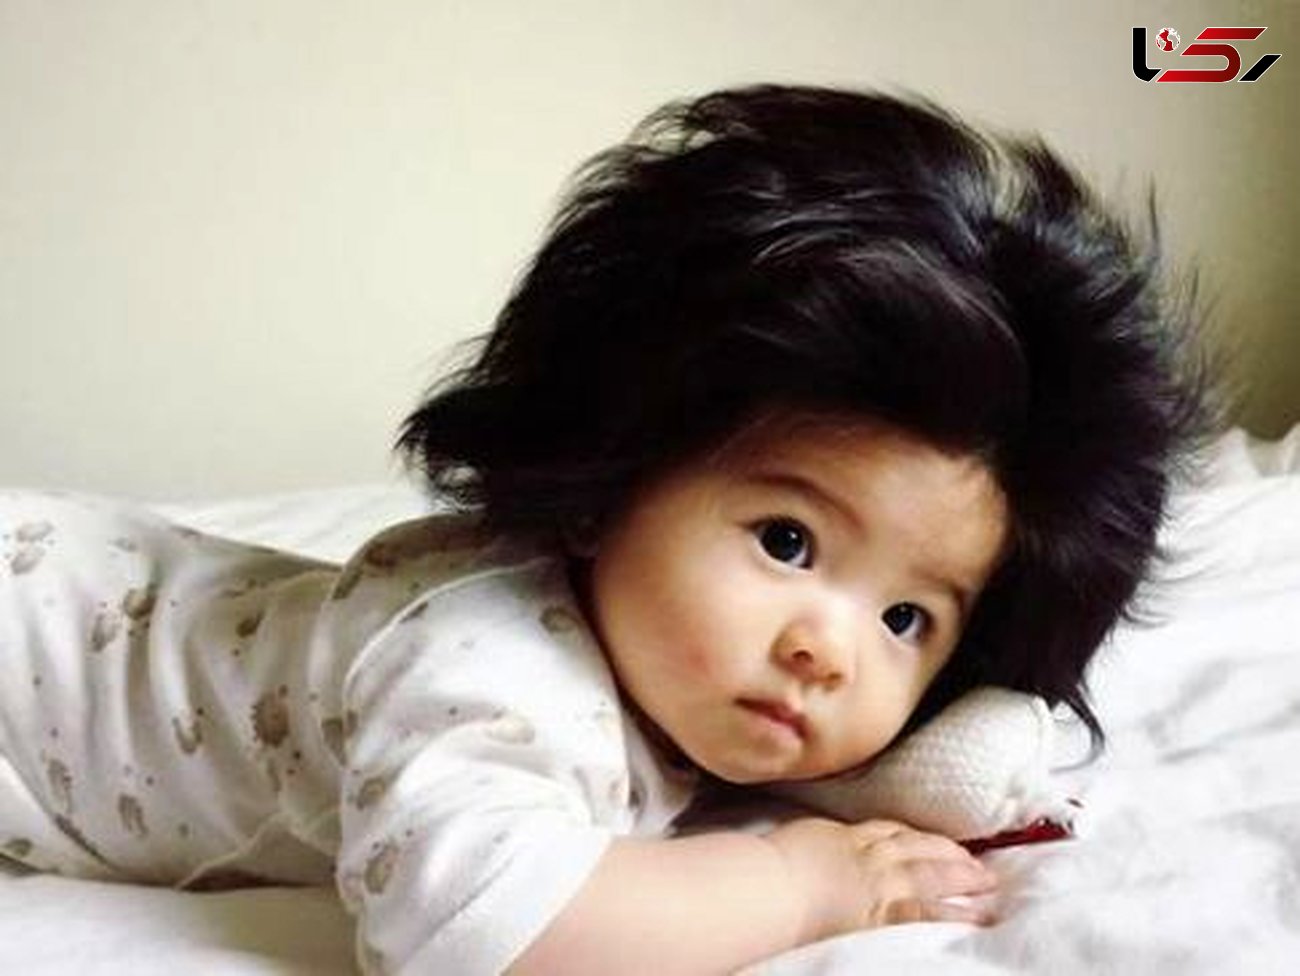 شهرت دختر بچه ژاپنی در فضای مجازی به خاطر موهایش+عکس